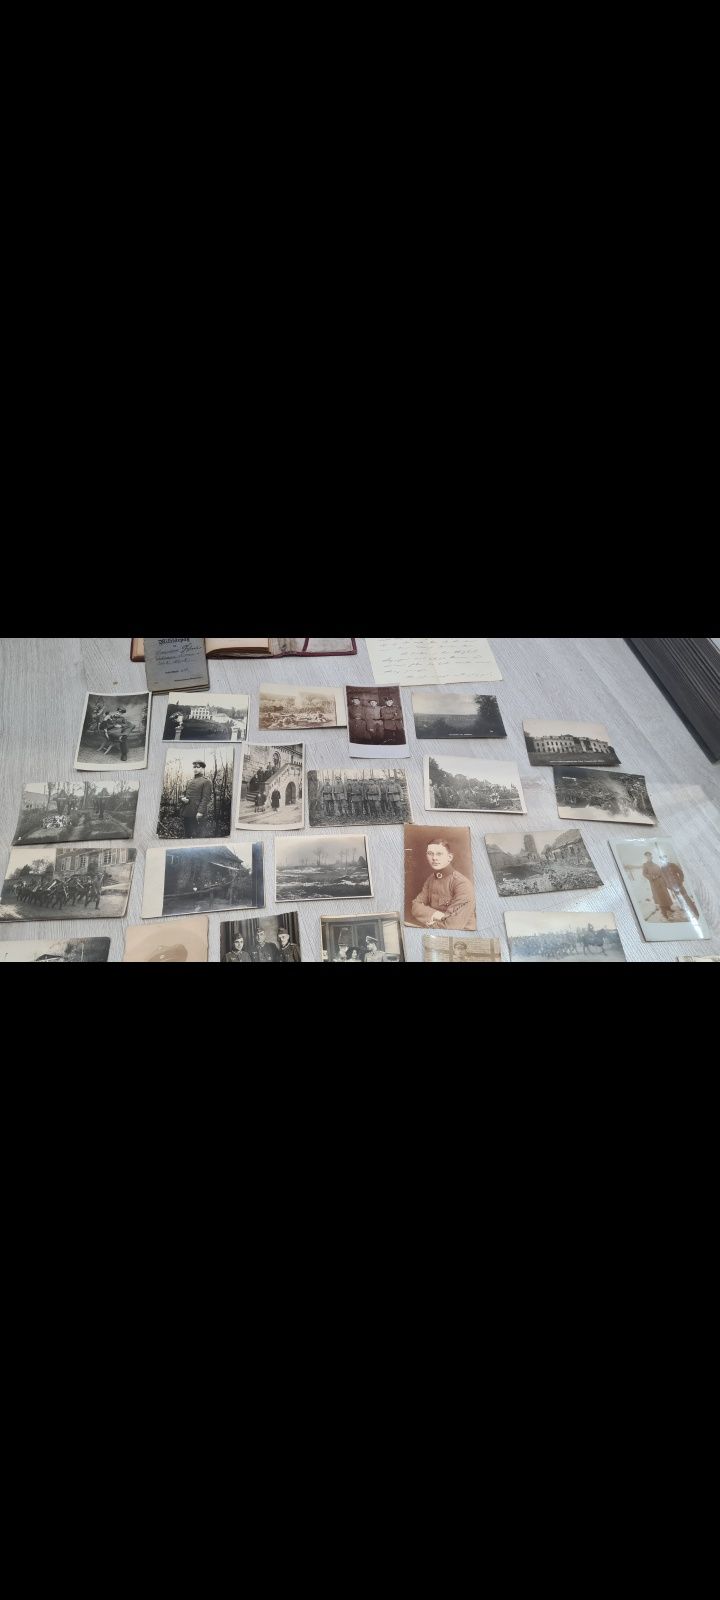 Dokumenty pruskie militaria książeczka wojskowa zdjęcia